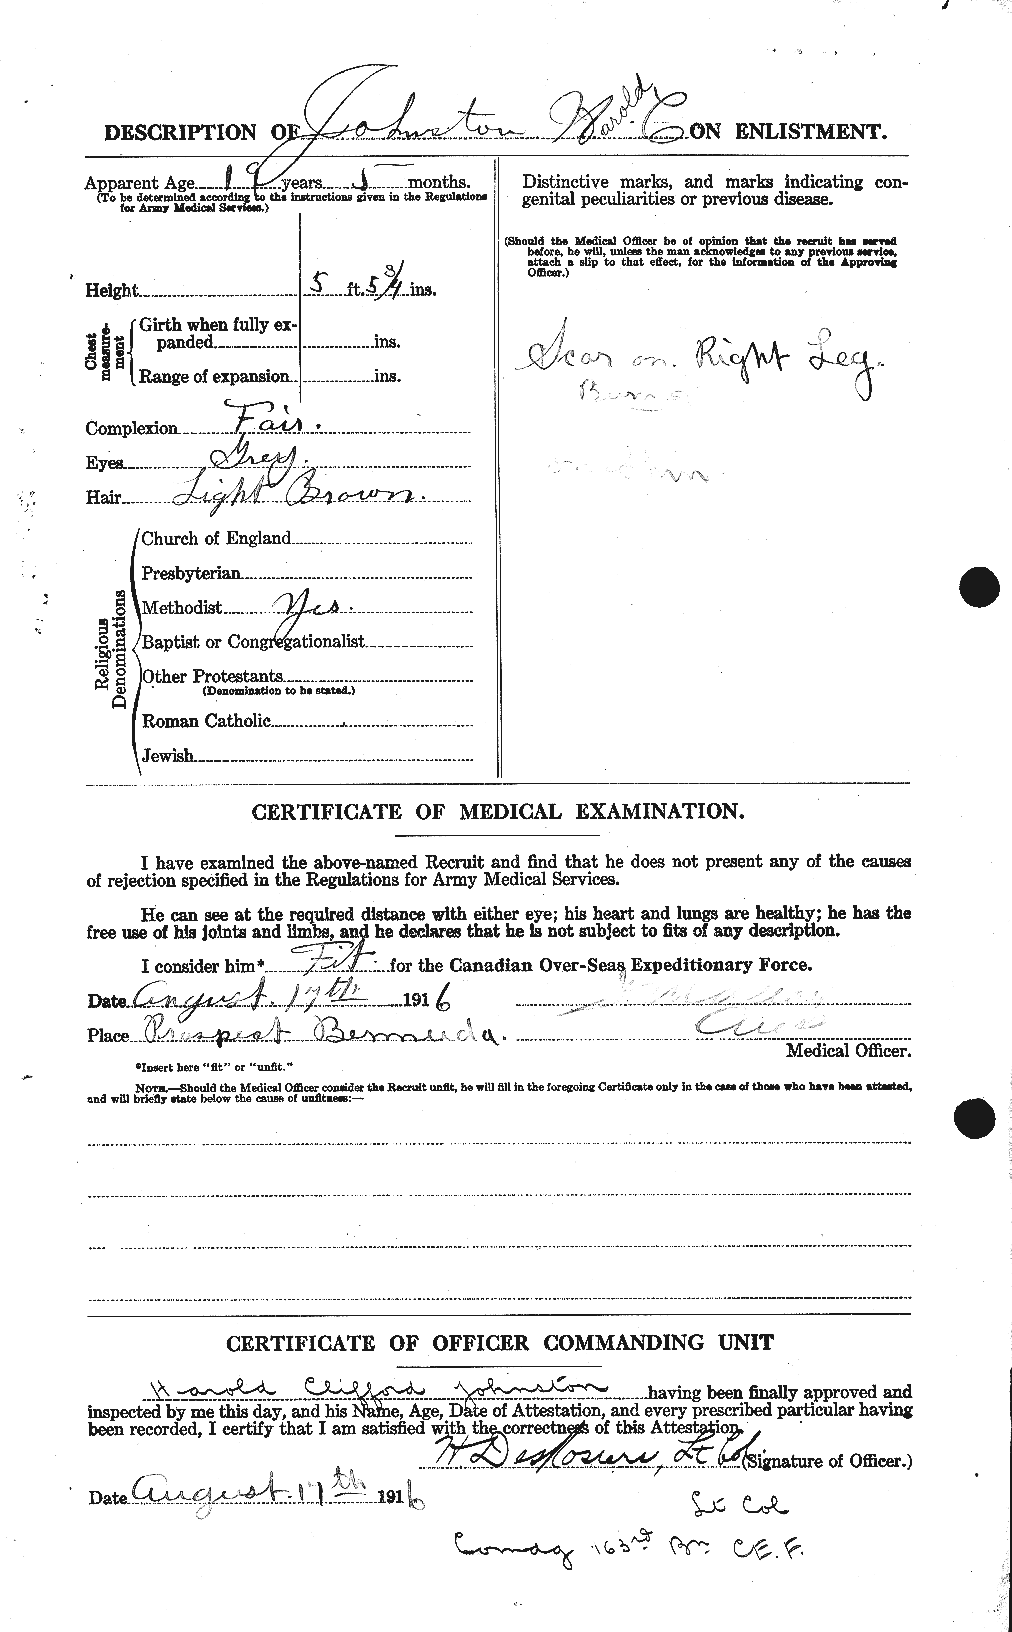 Dossiers du Personnel de la Première Guerre mondiale - CEC 419486b